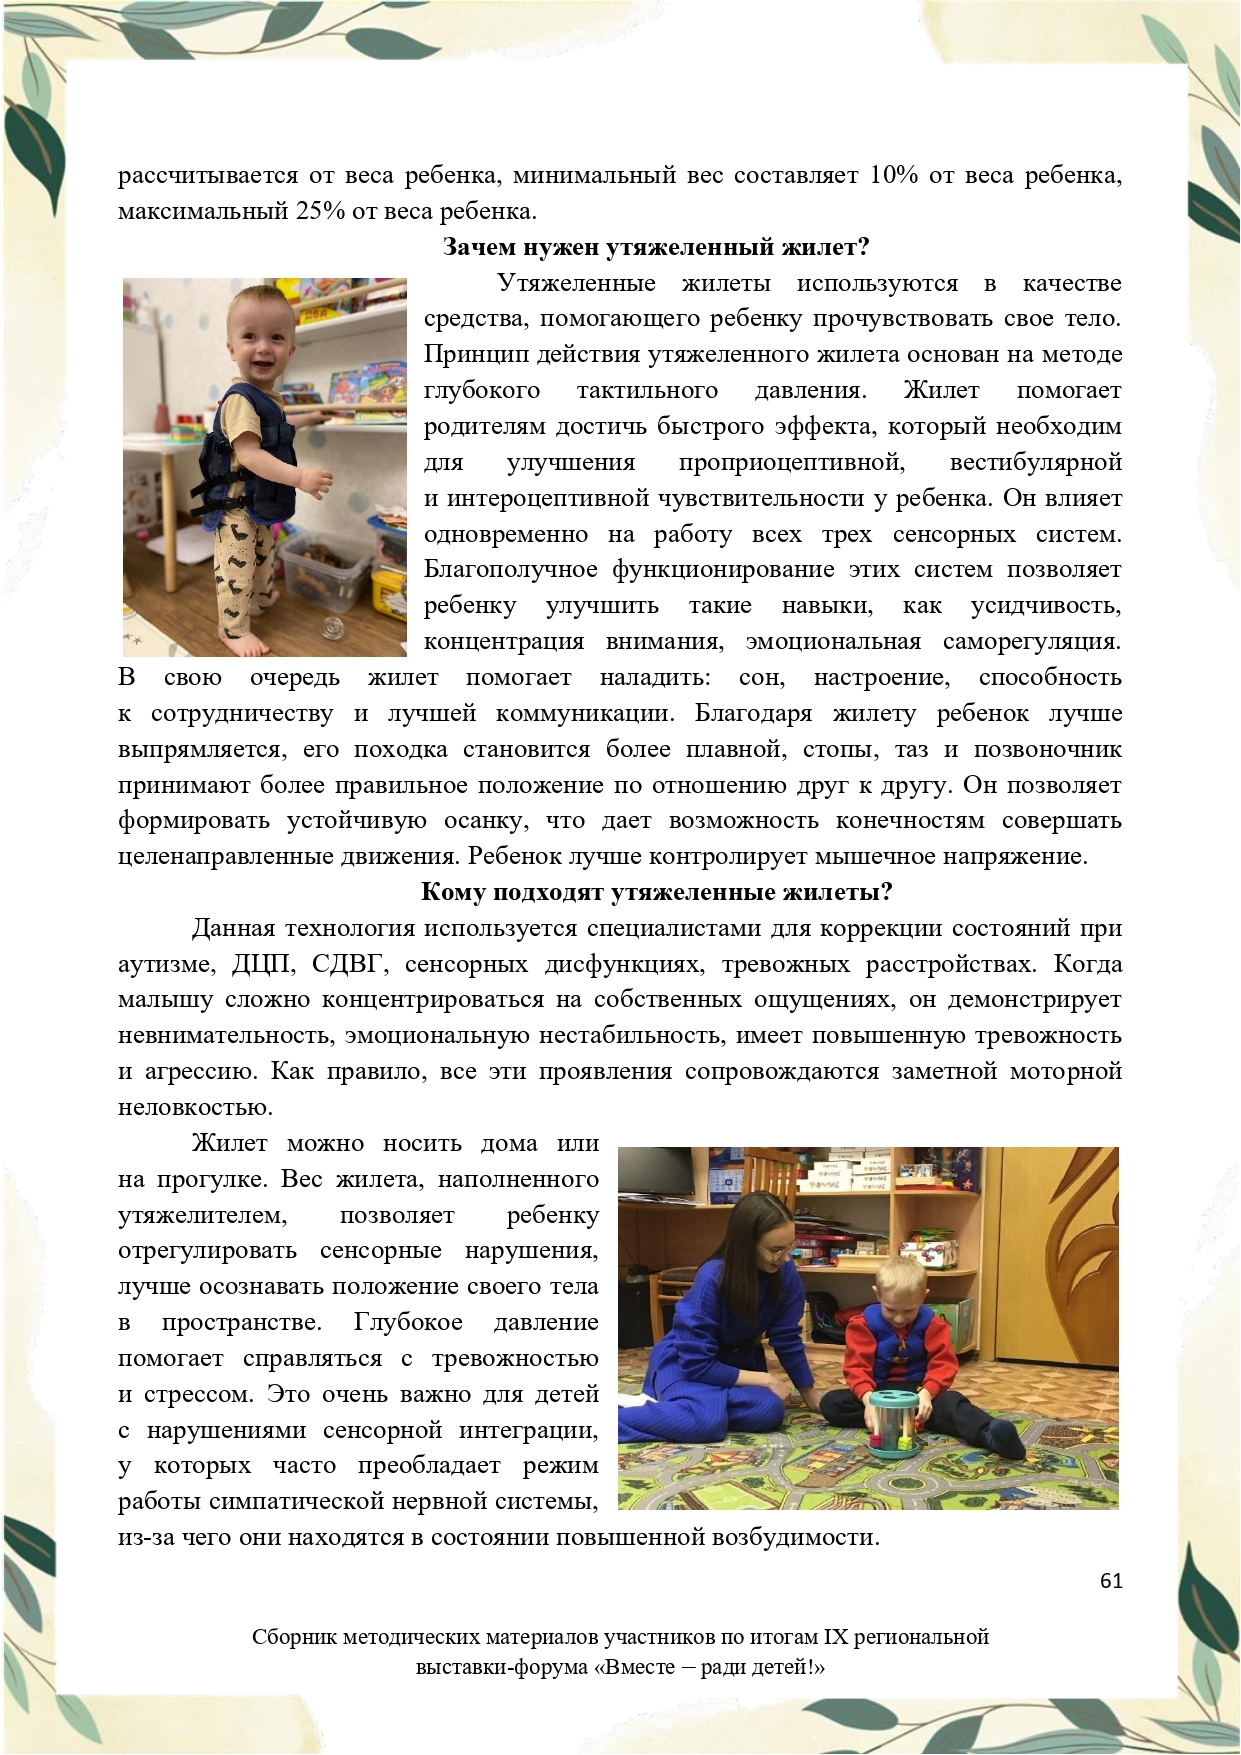 Sbornik_metodicheskikh_materialov_uchastnikov_IX_regionalnoy_vystavki-foruma_Vmeste__radi_detey_33__2023_page-0061